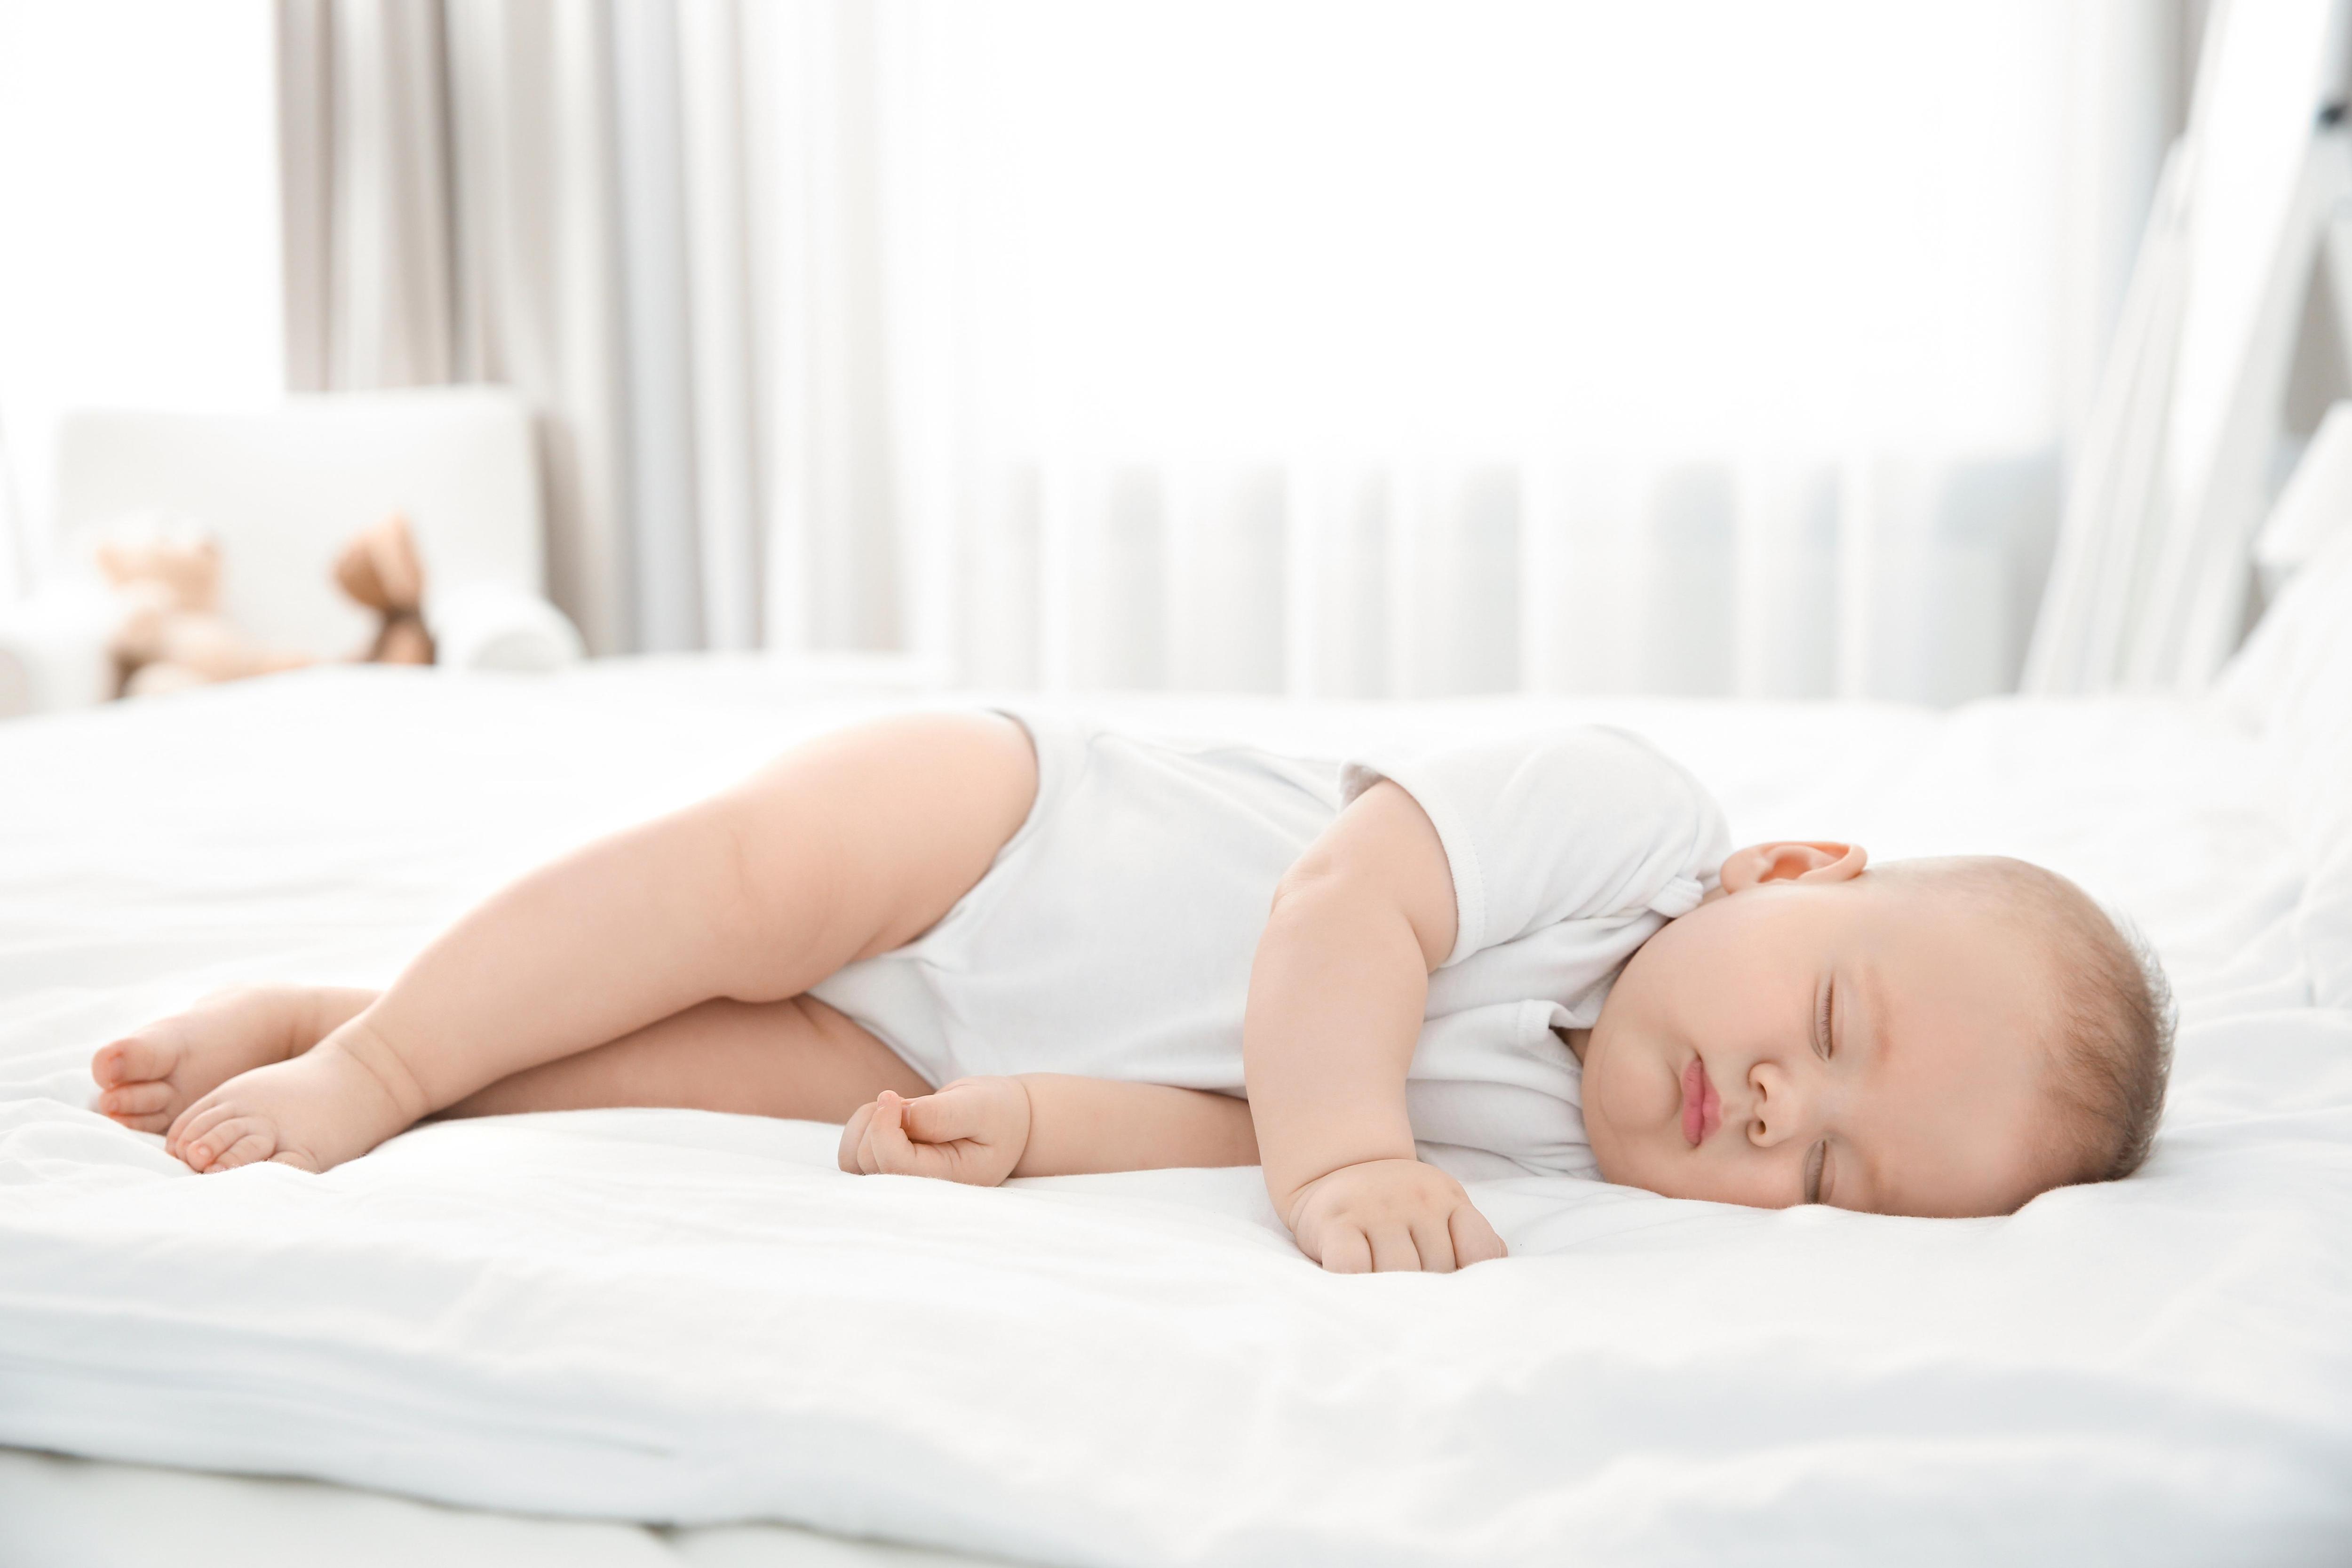 Почему ребенок часто просыпается ночью?